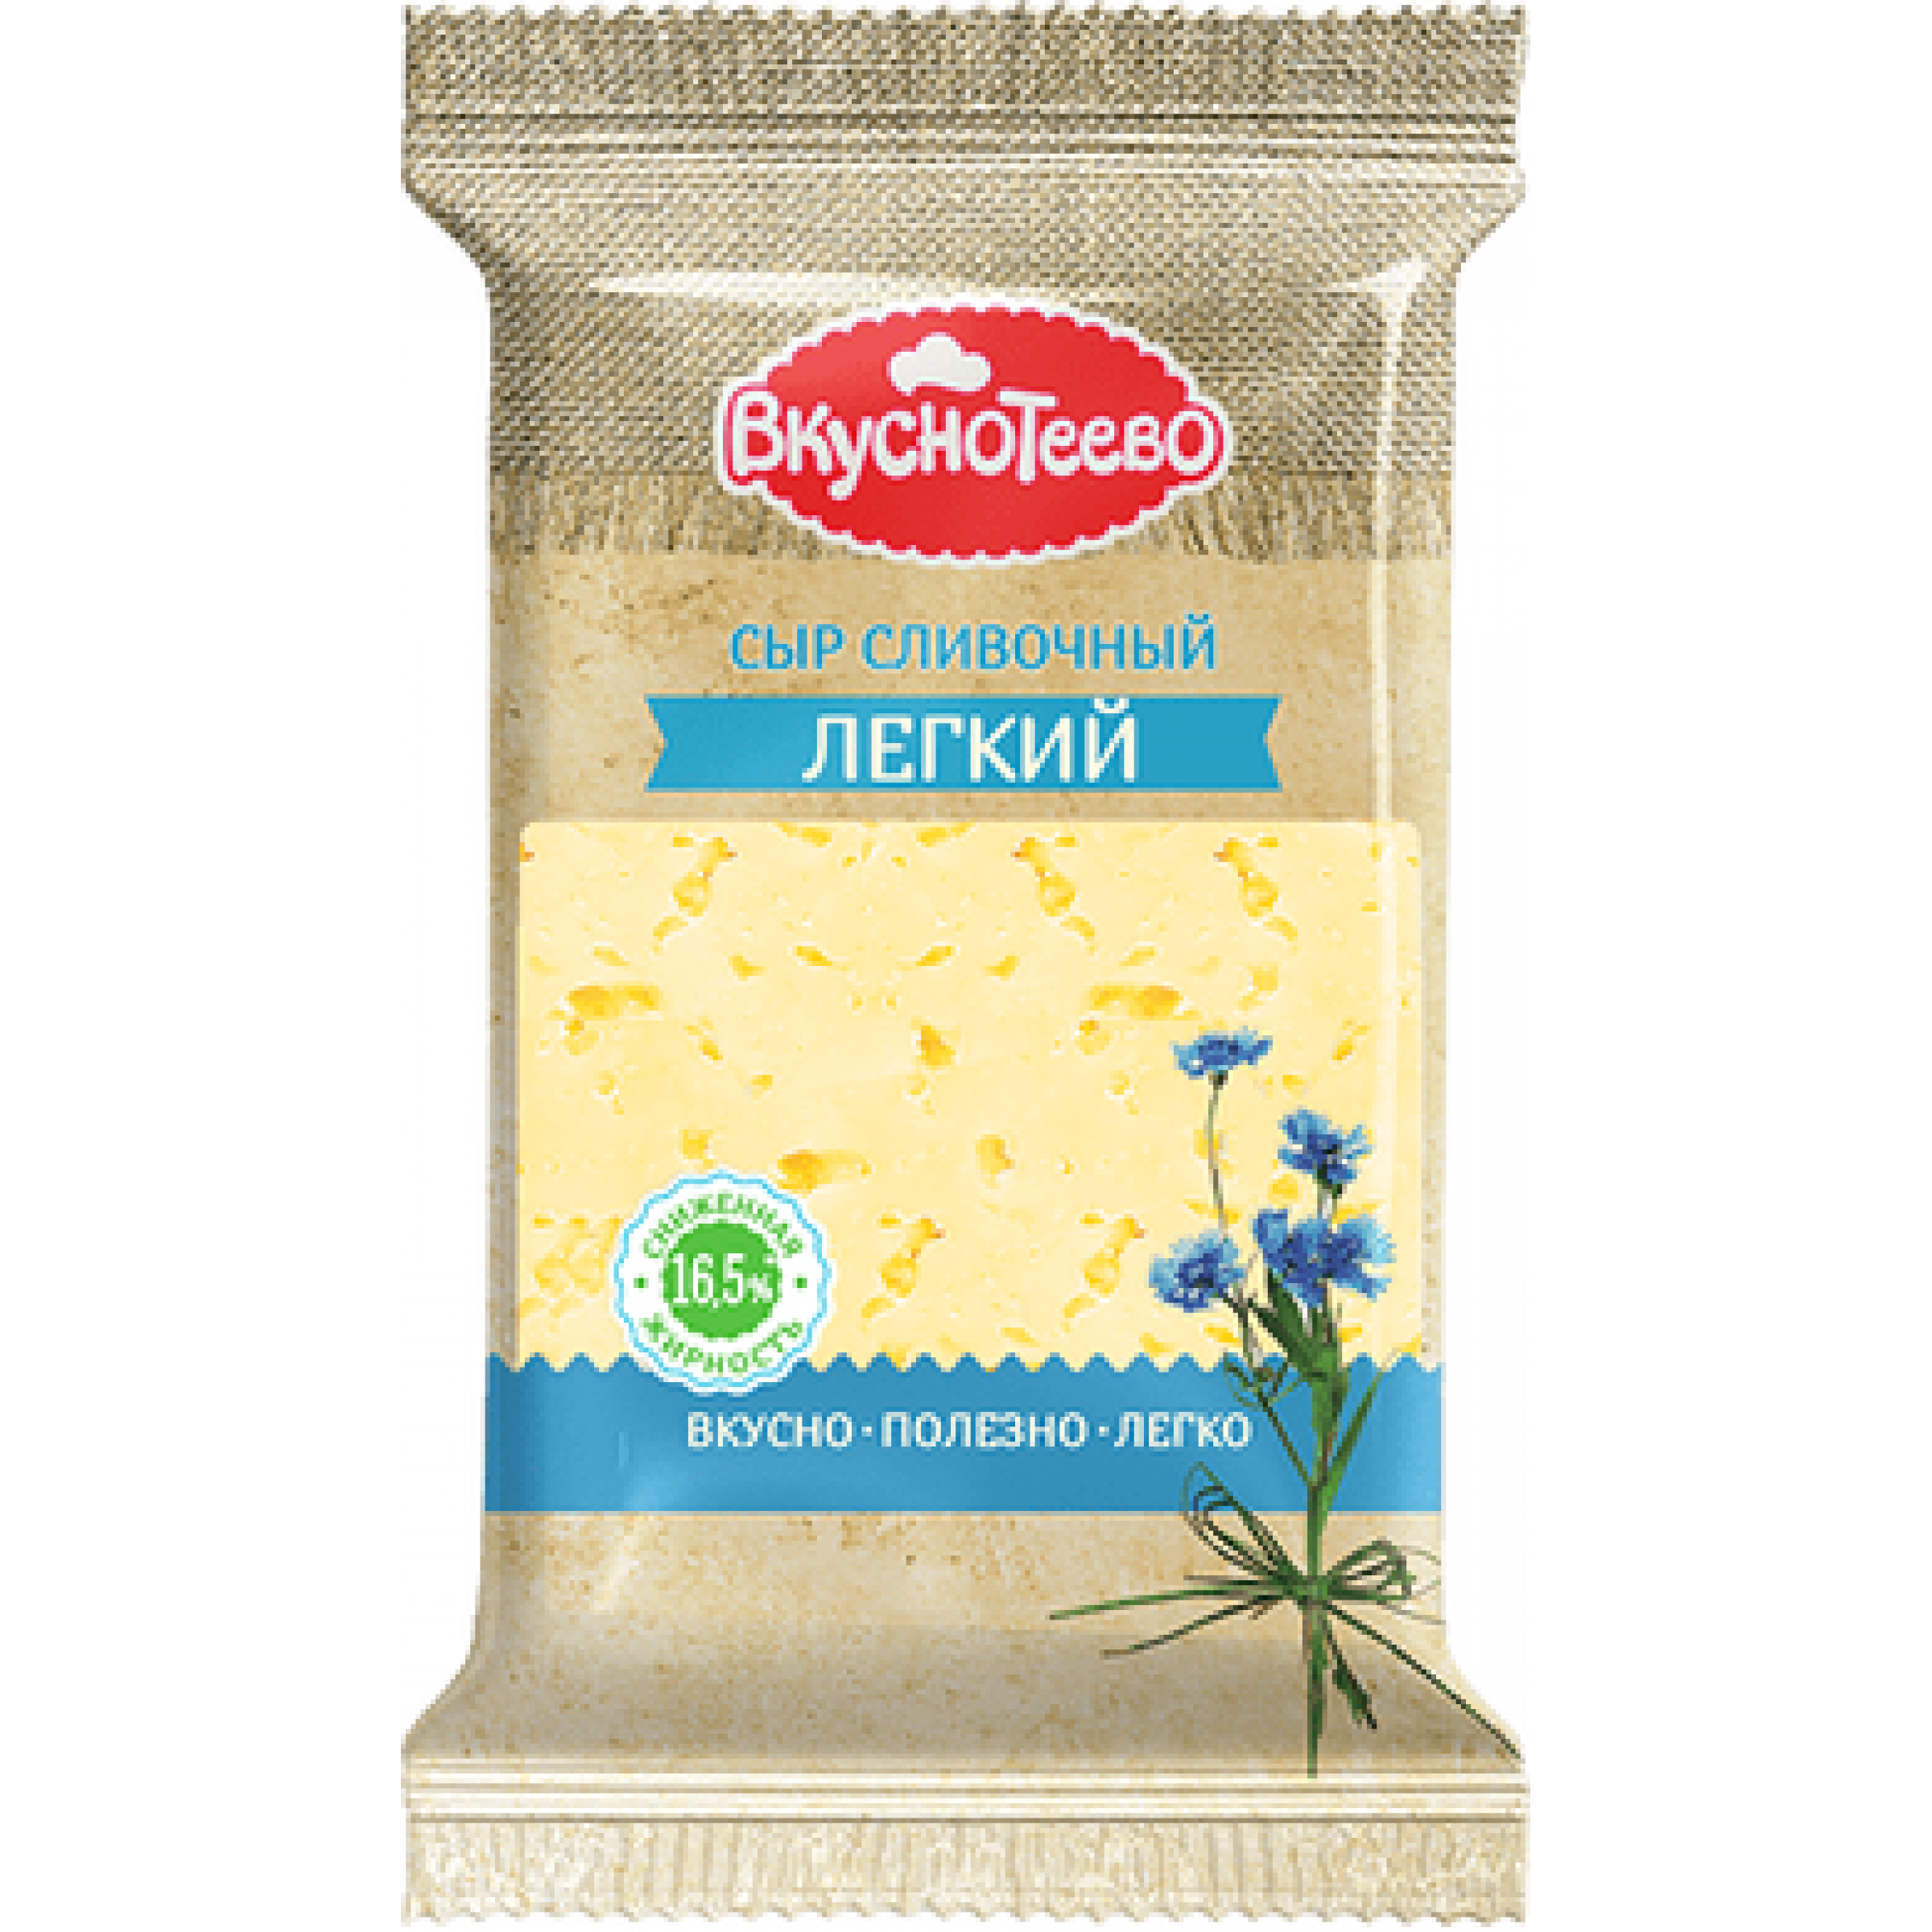 Сыр Сливочный Легкий Вкуснотеево 16,5 % 200 г